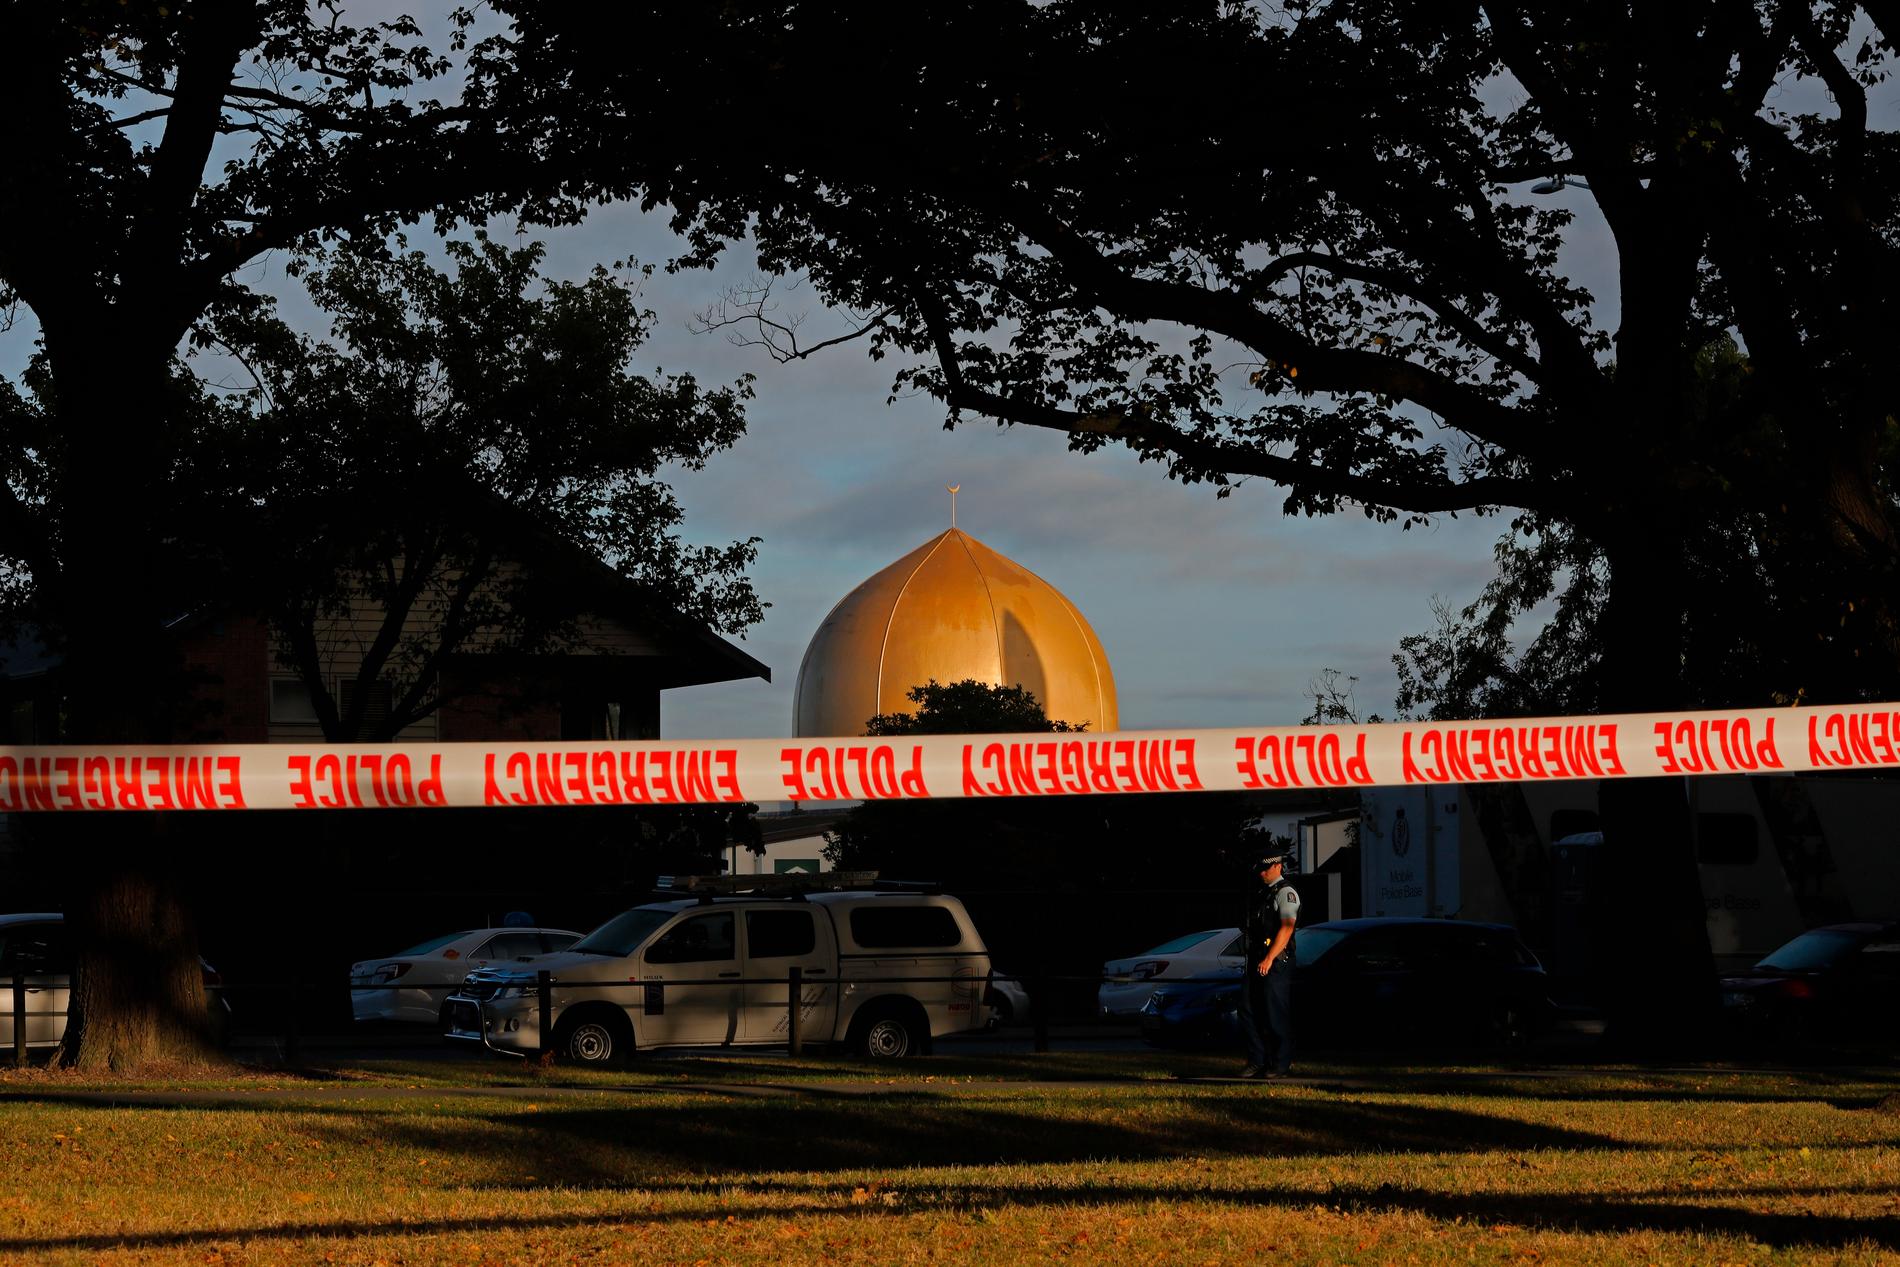 I mars attackerades två moskéer i Christchurch i Nya Zeeland och 51 människor miste livet.